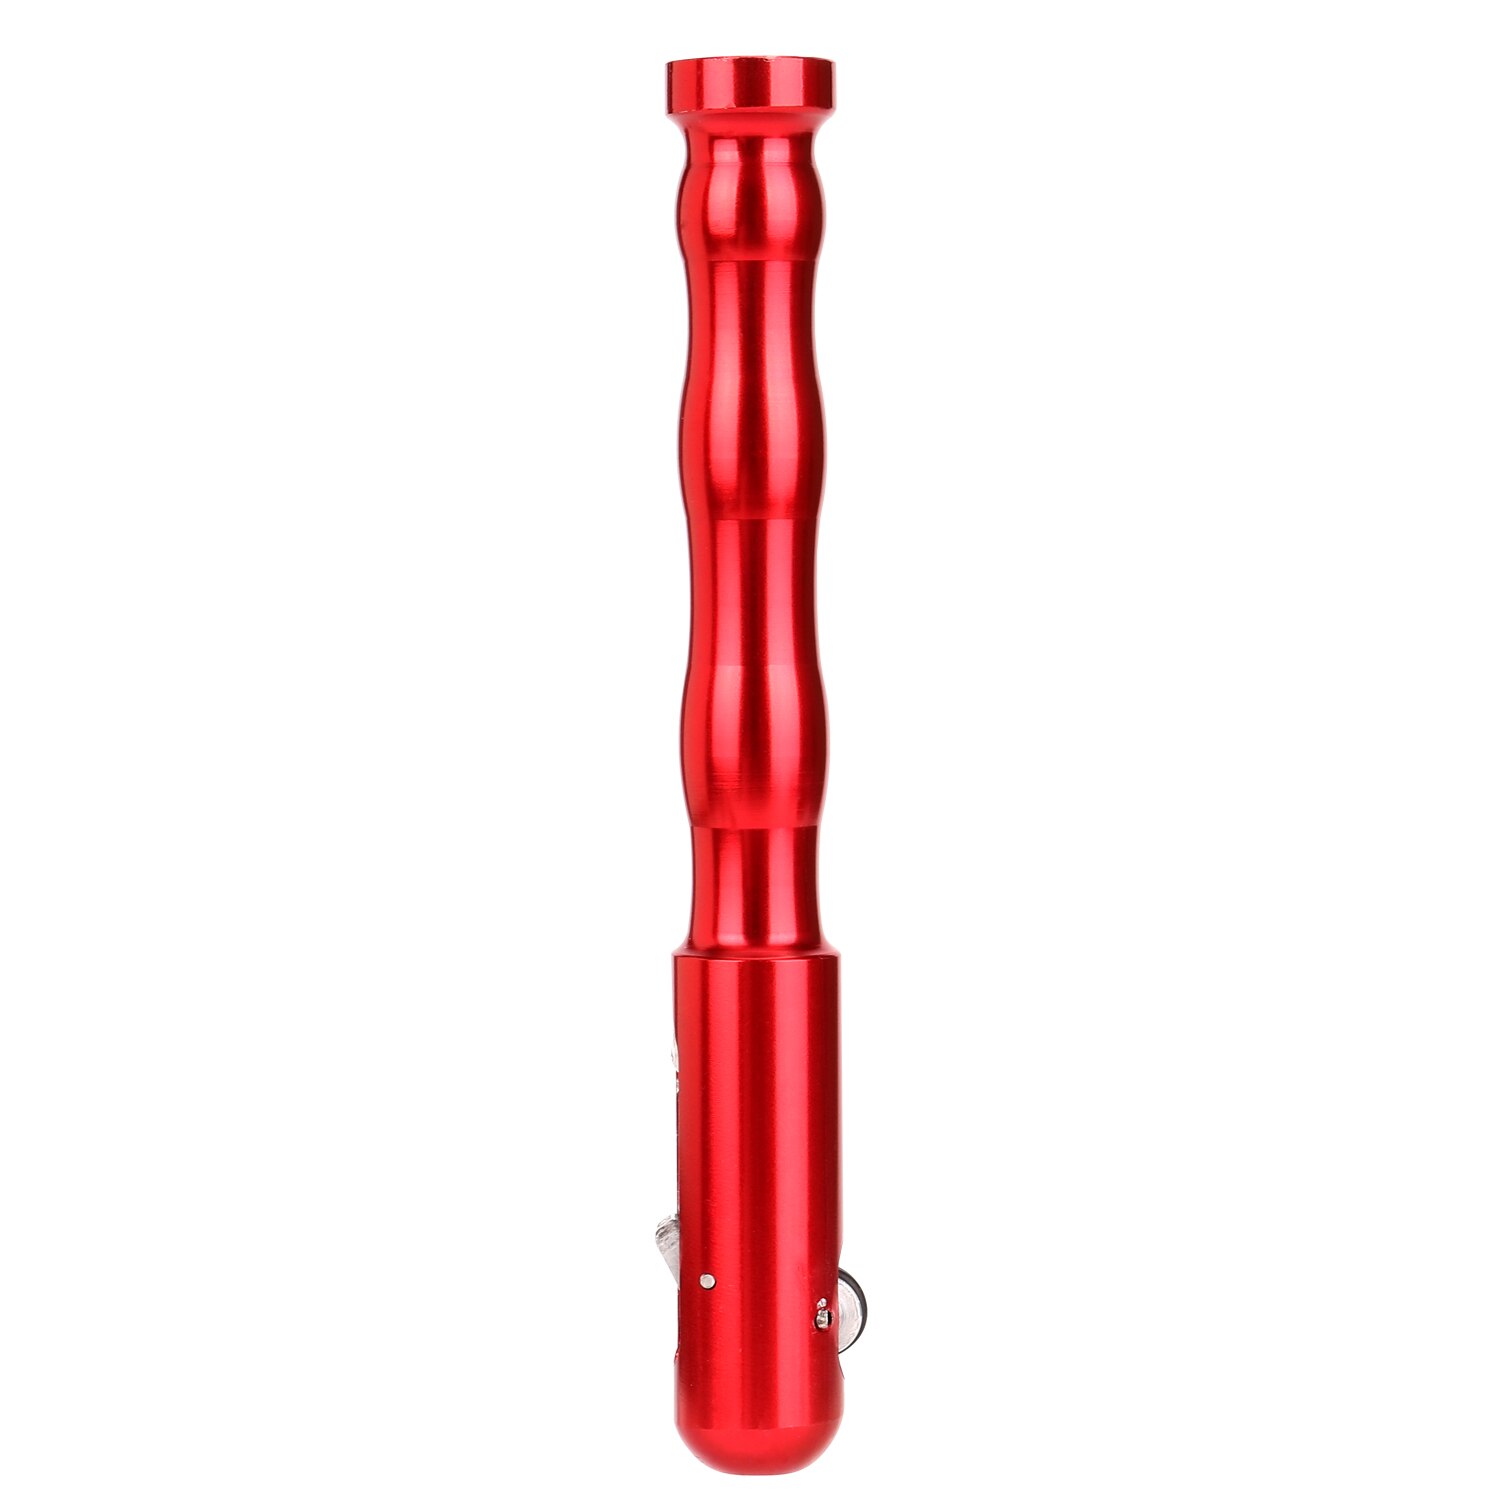 Tig-svejsetrådtilførselspen fingerfremfører svejsning af tig-penrodholderholder fyldetrådspenn til 1-3.2mm ledninger: Rød